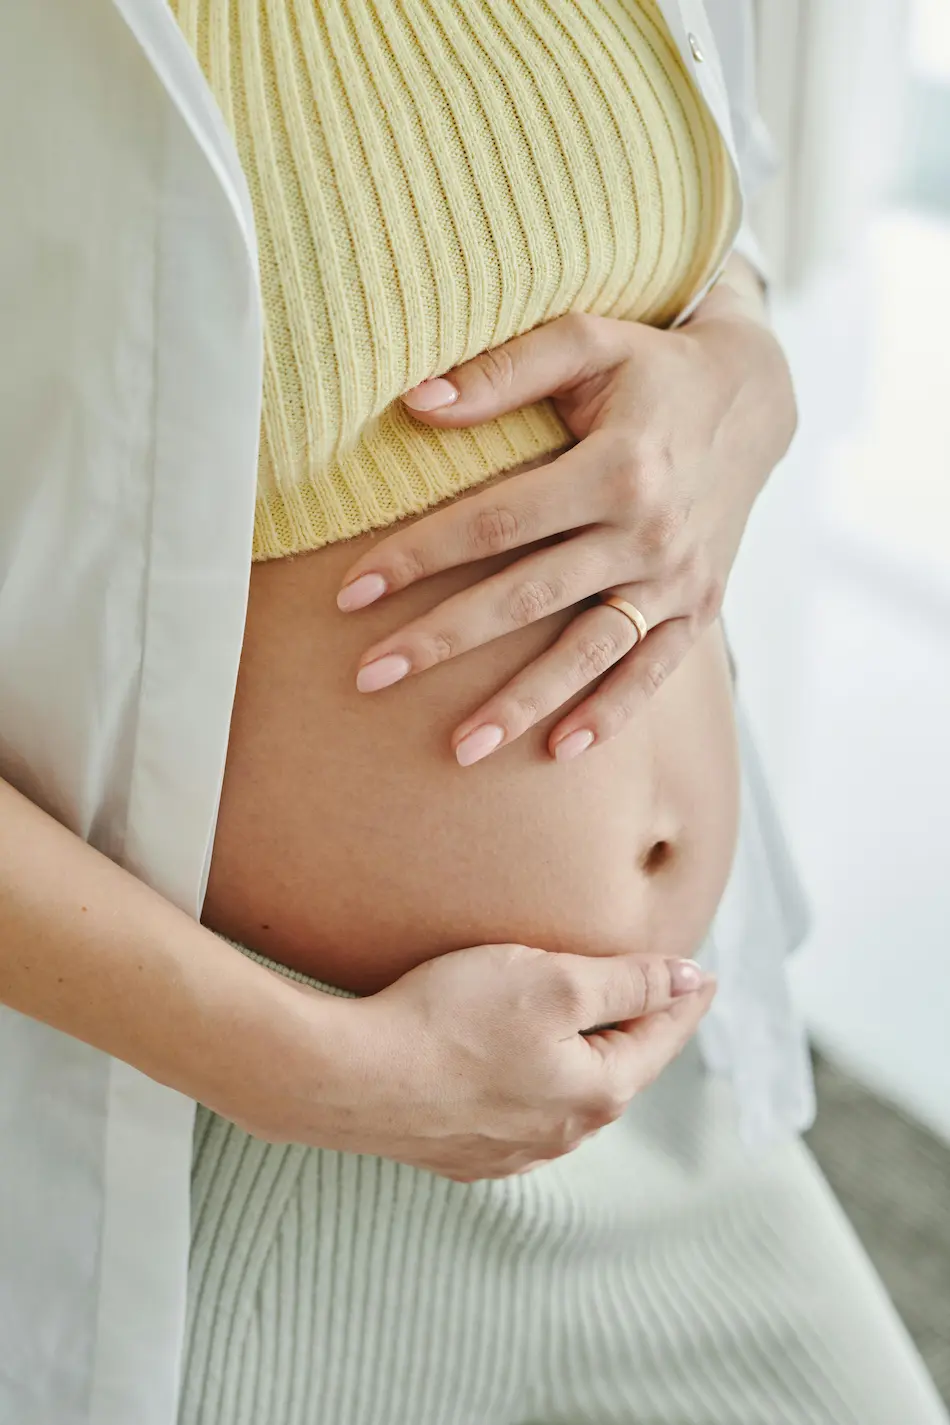 Cálcio durante a gravidez e a amamentação